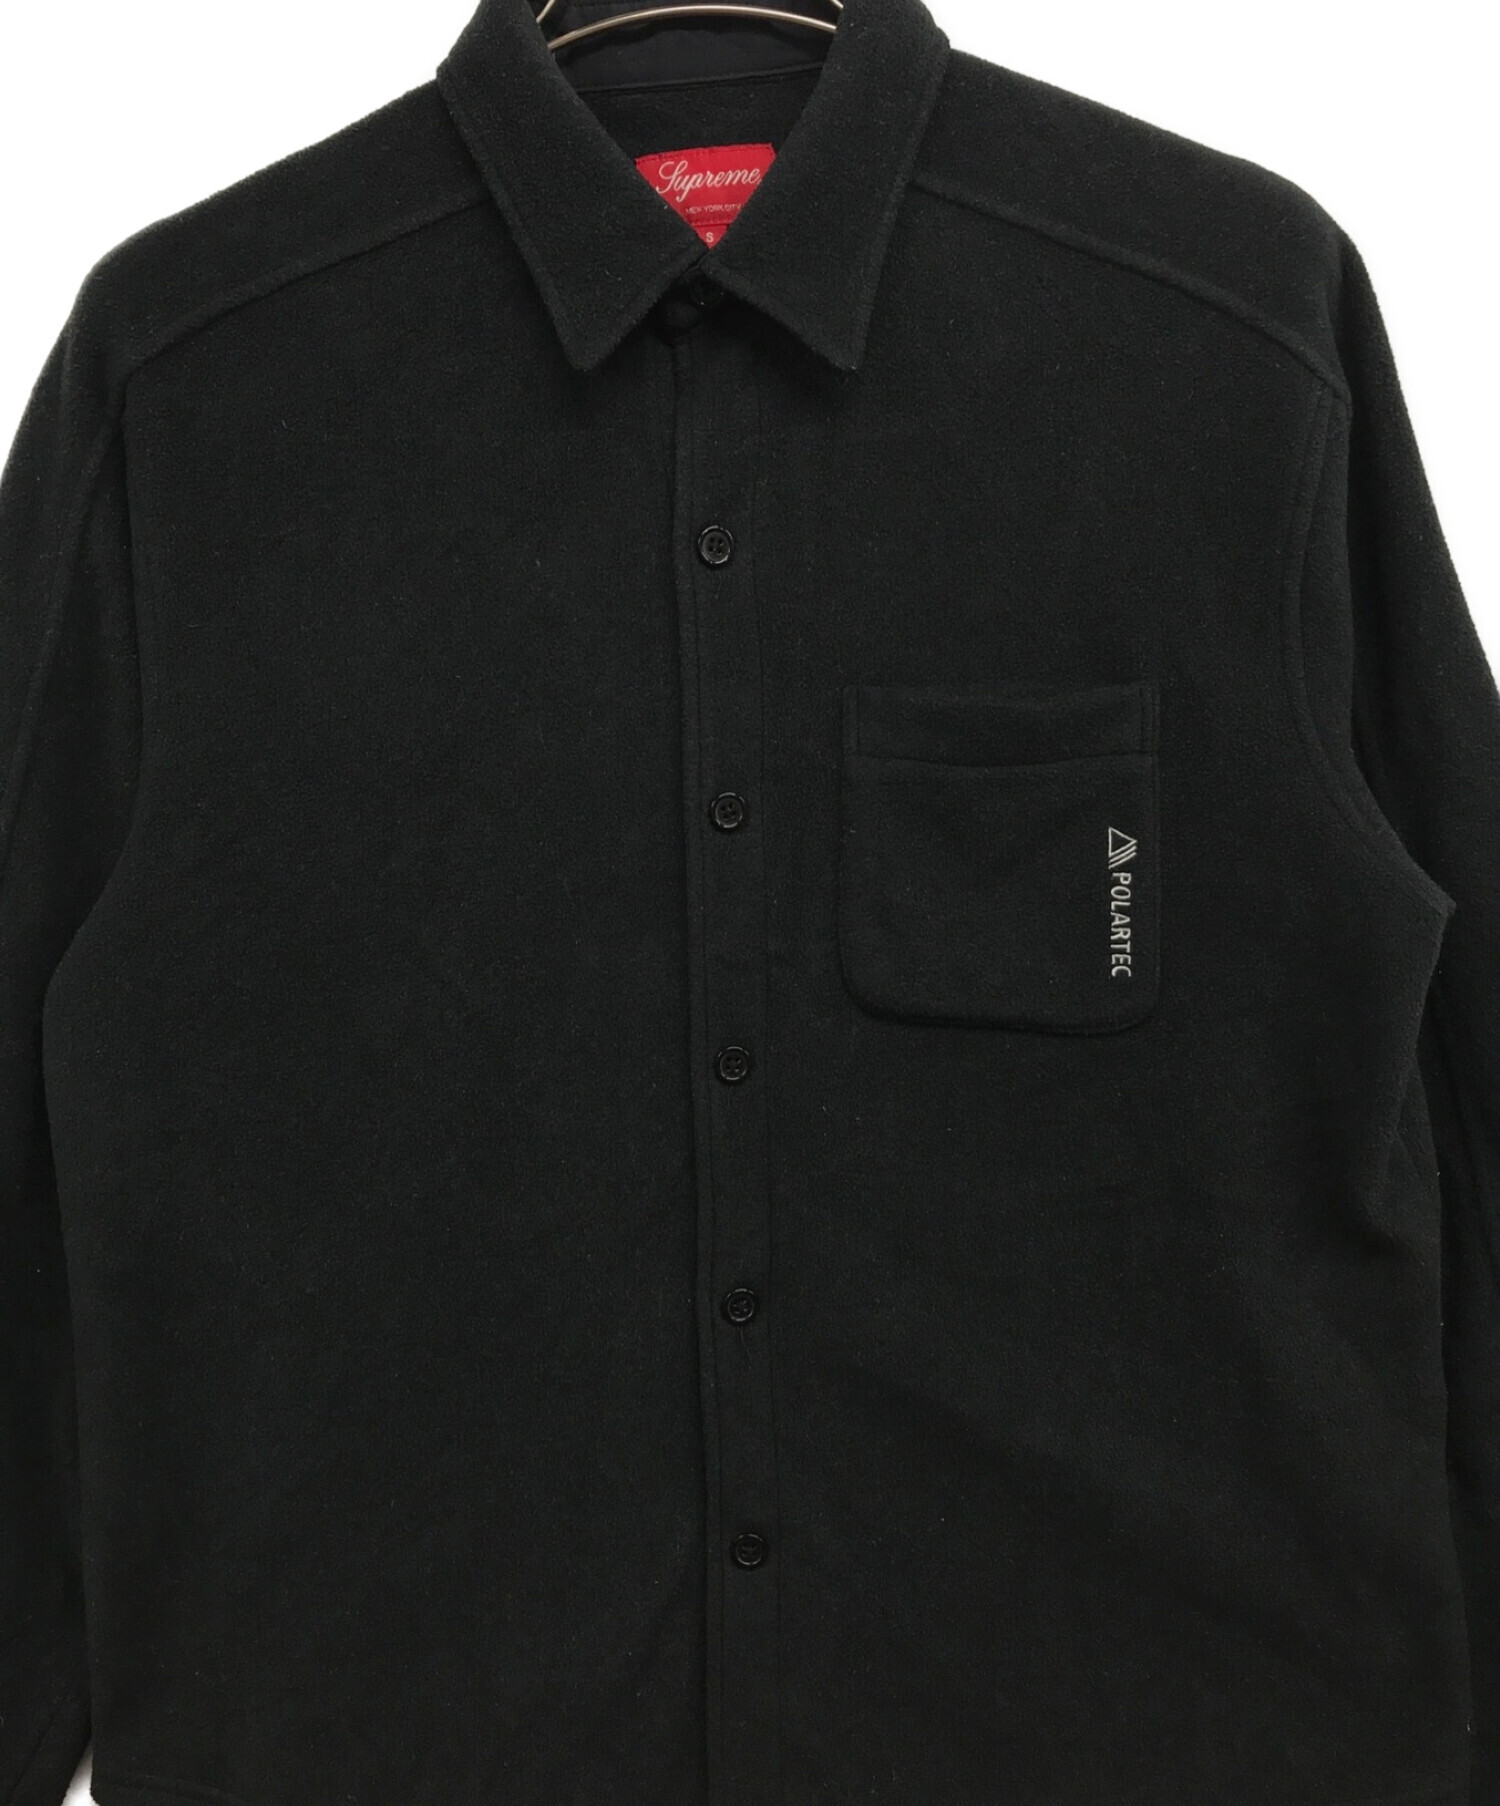 Supreme (シュプリーム) Polartec Shirt ブラック サイズ:S